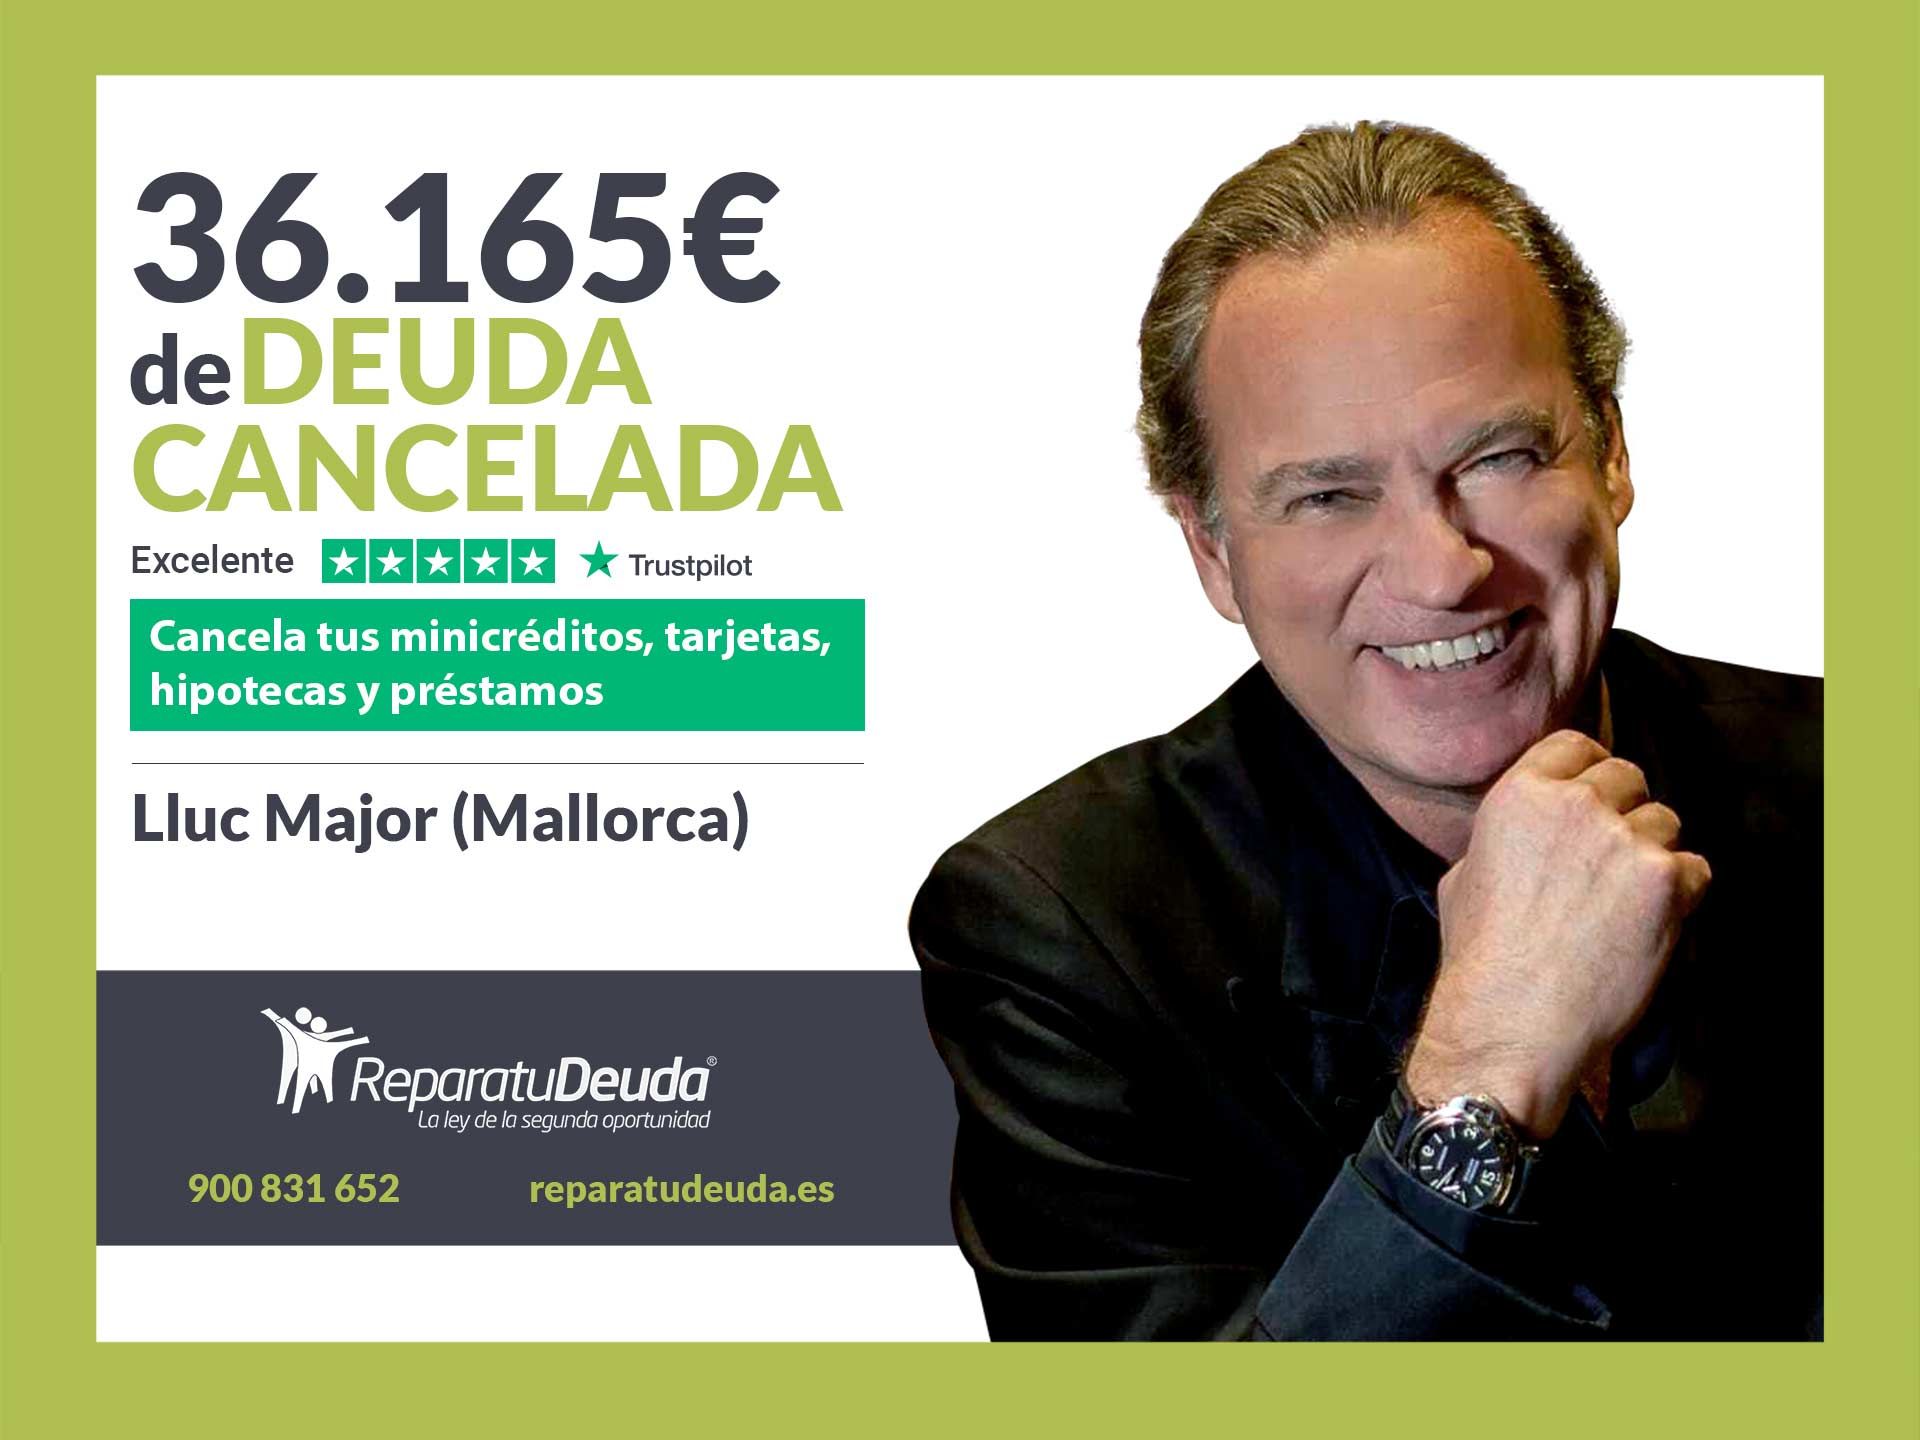 Repara tu Deuda Abogados cancela 36.165? en Llucmajor (Mallorca) gracias a la Ley de Segunda Oportunidad